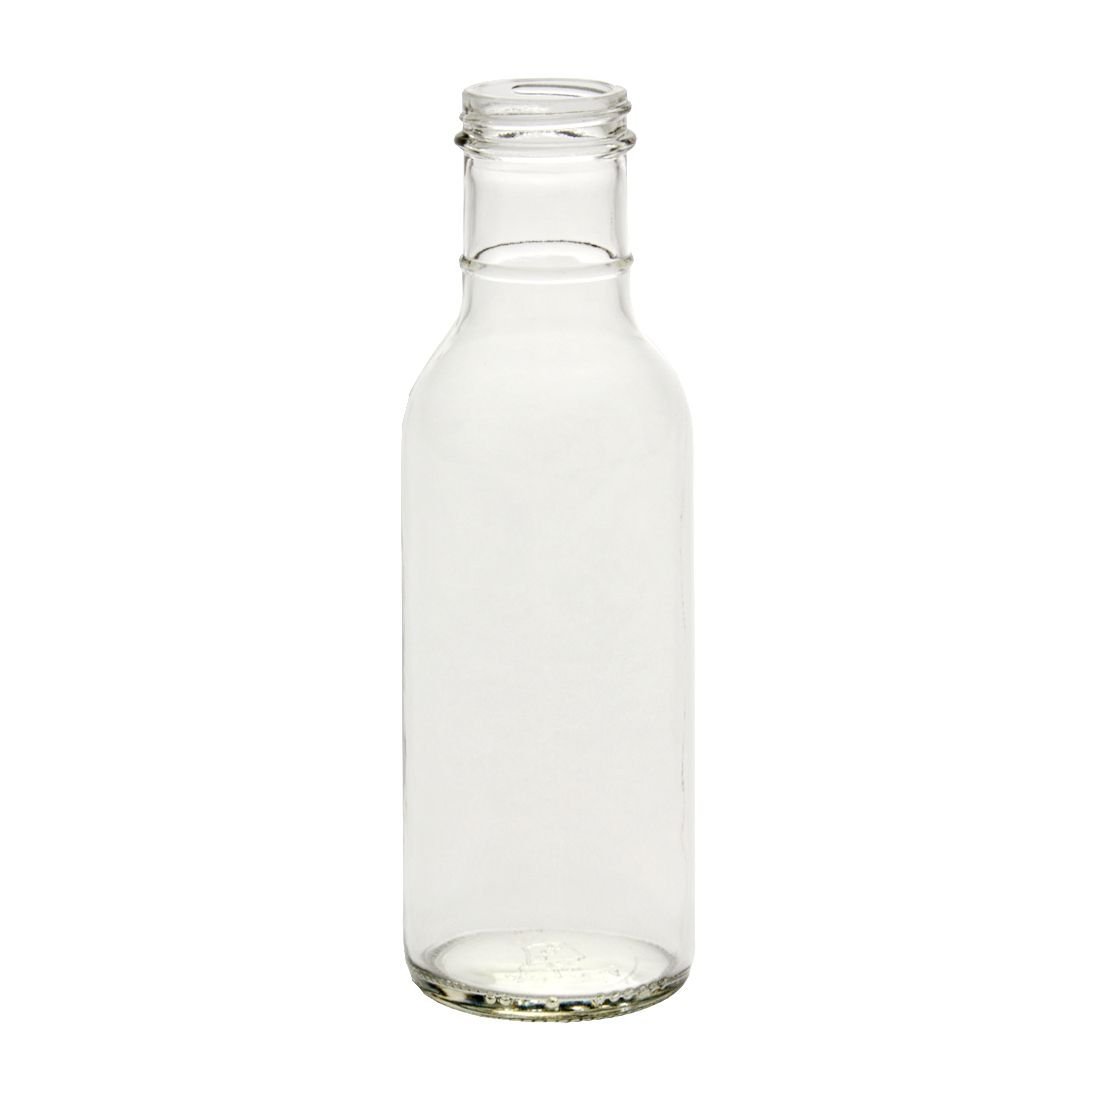 12 oz. Ring Neck Glass Dressing Bottle - 12/Case